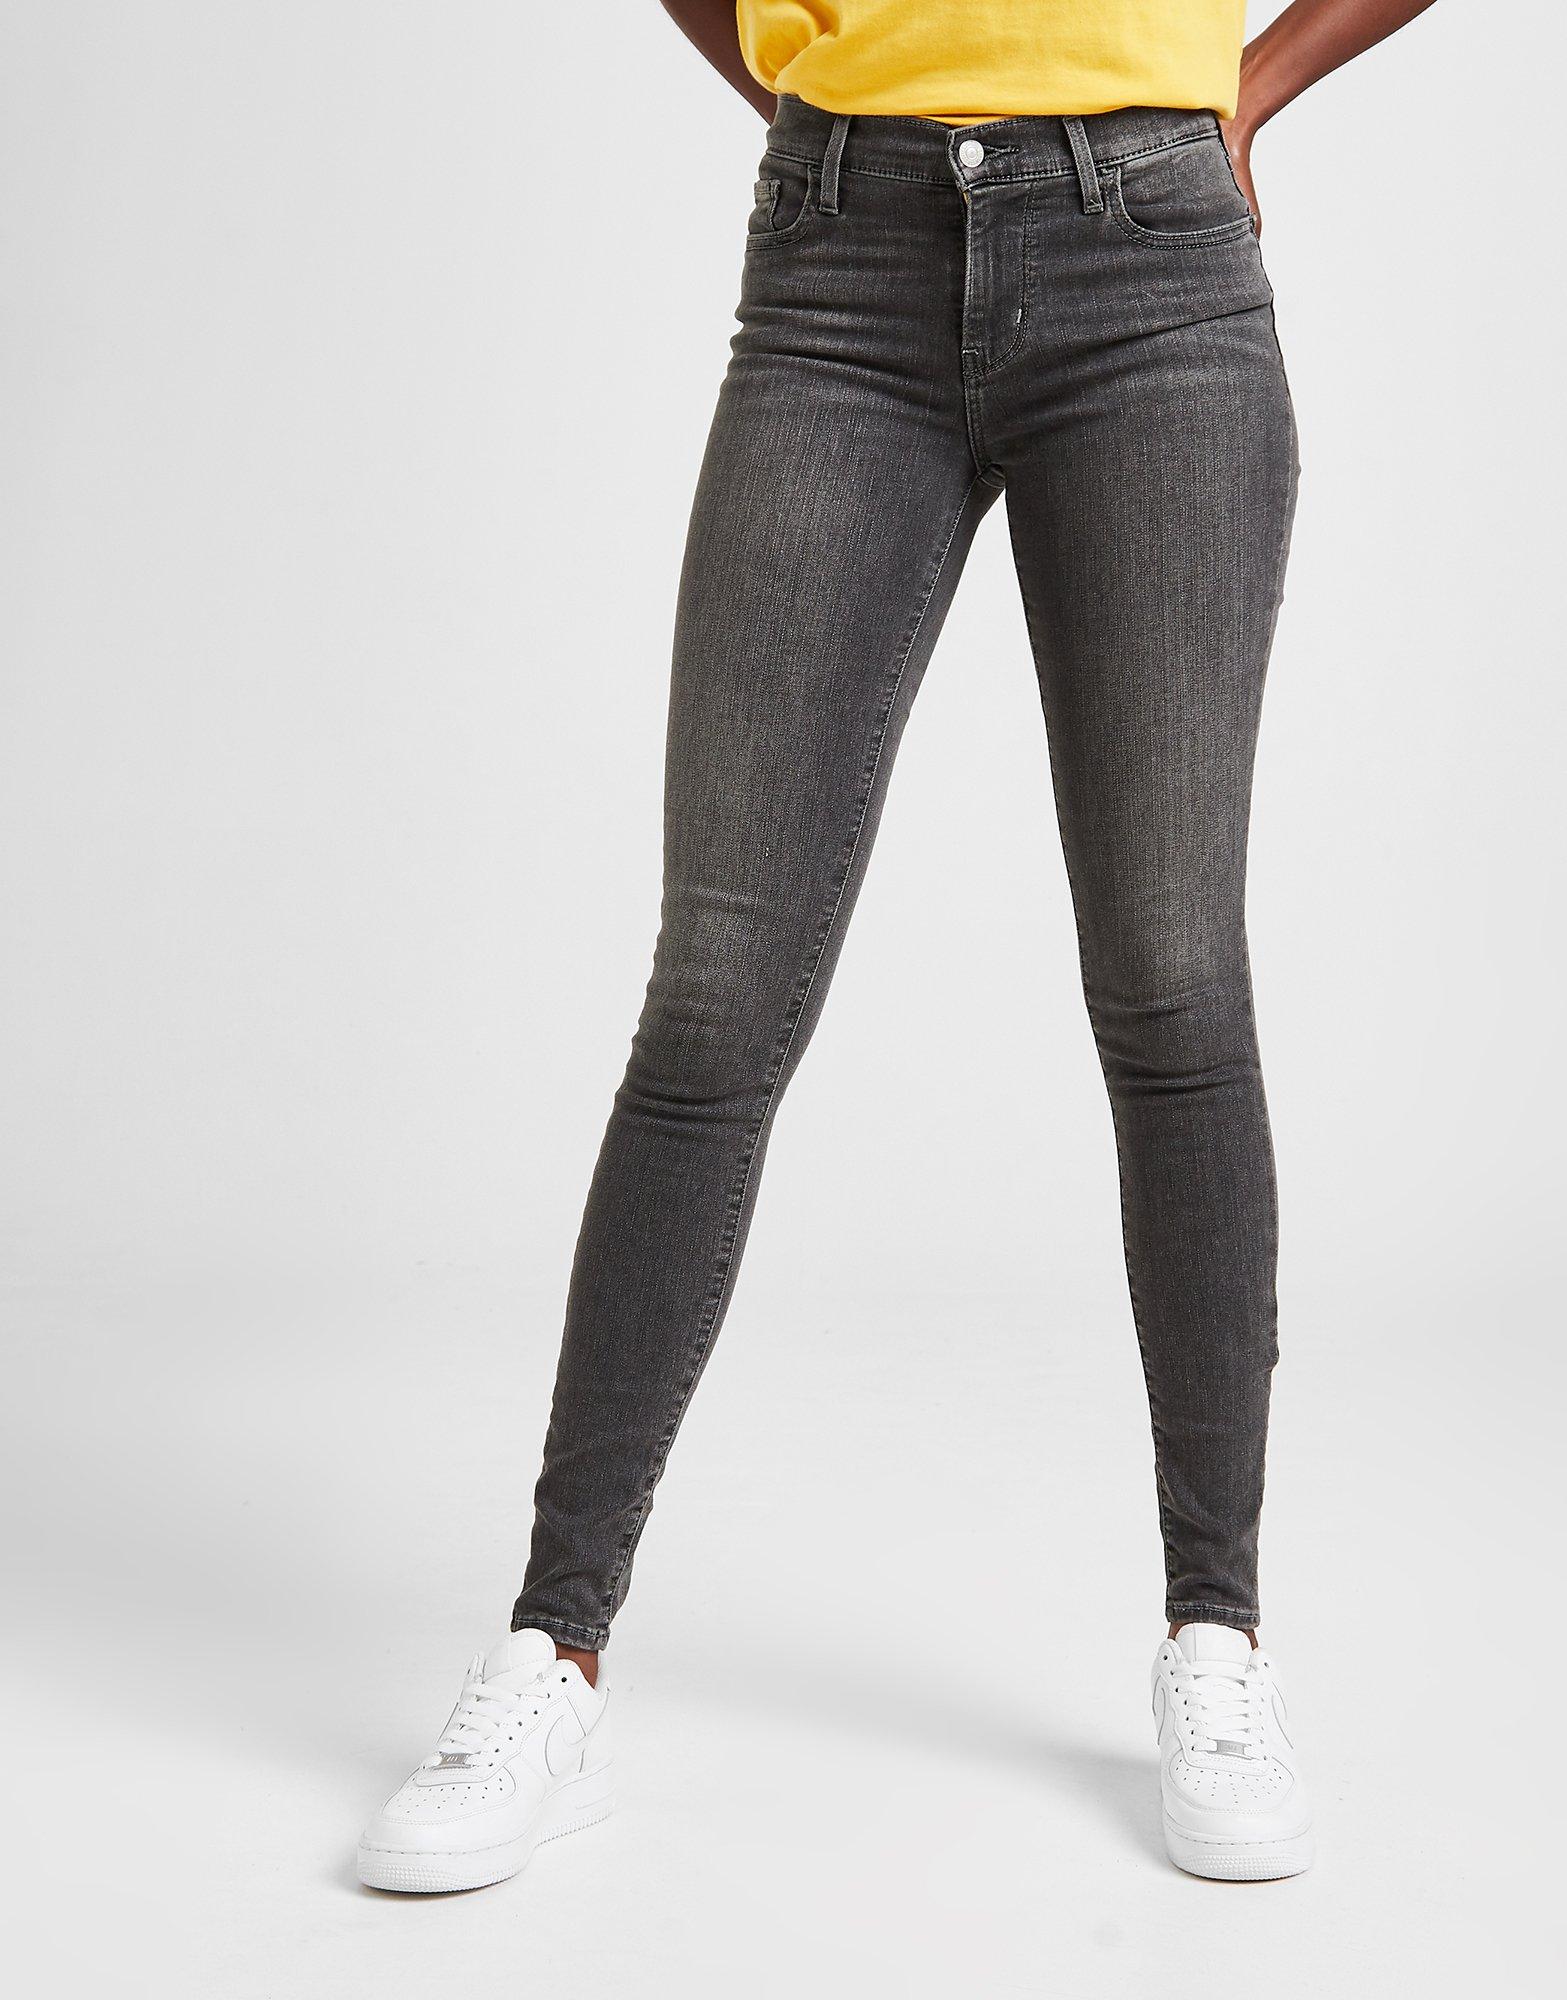 Black Levis 710 Super Skinny Jeans | JD 